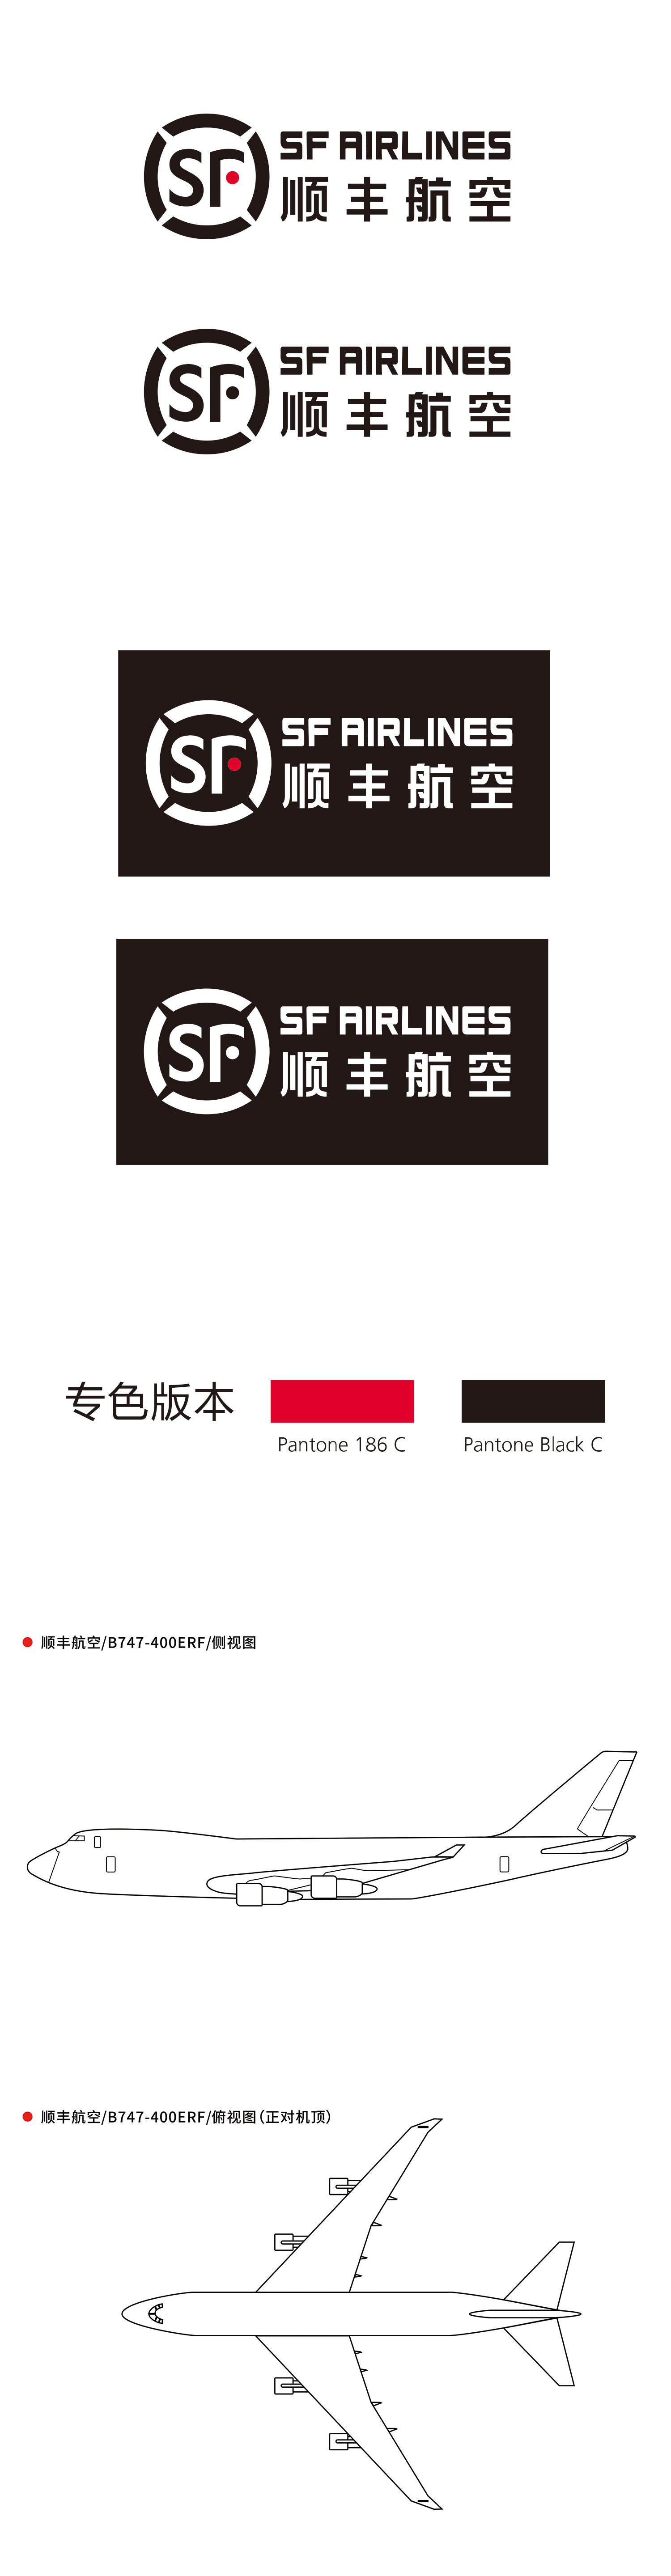 顺丰航空logo